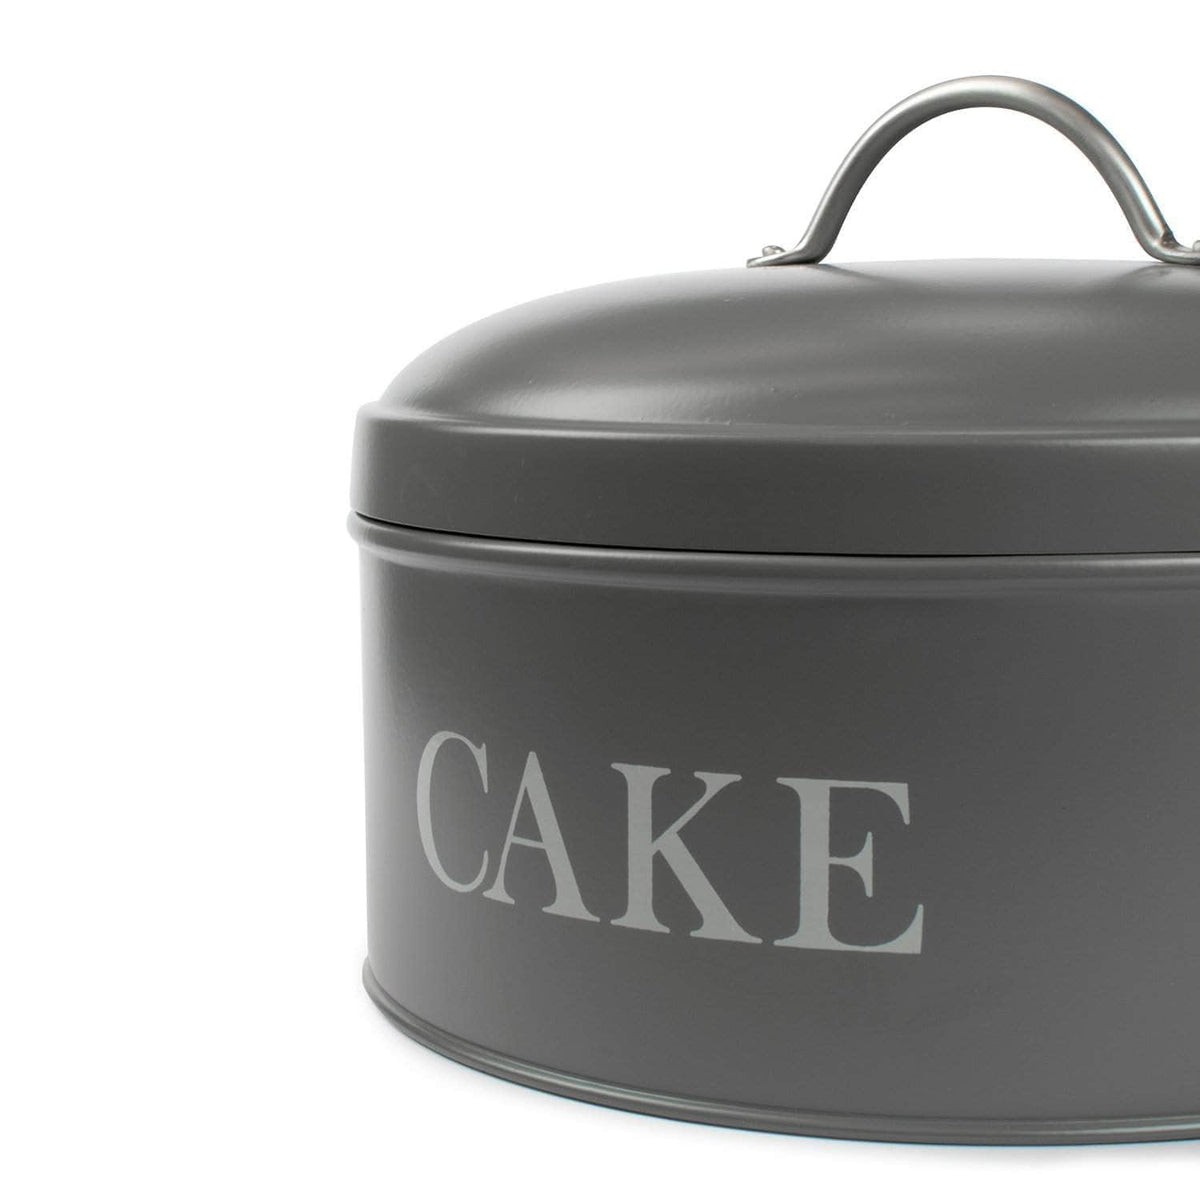 Cake tin in charcoal grey